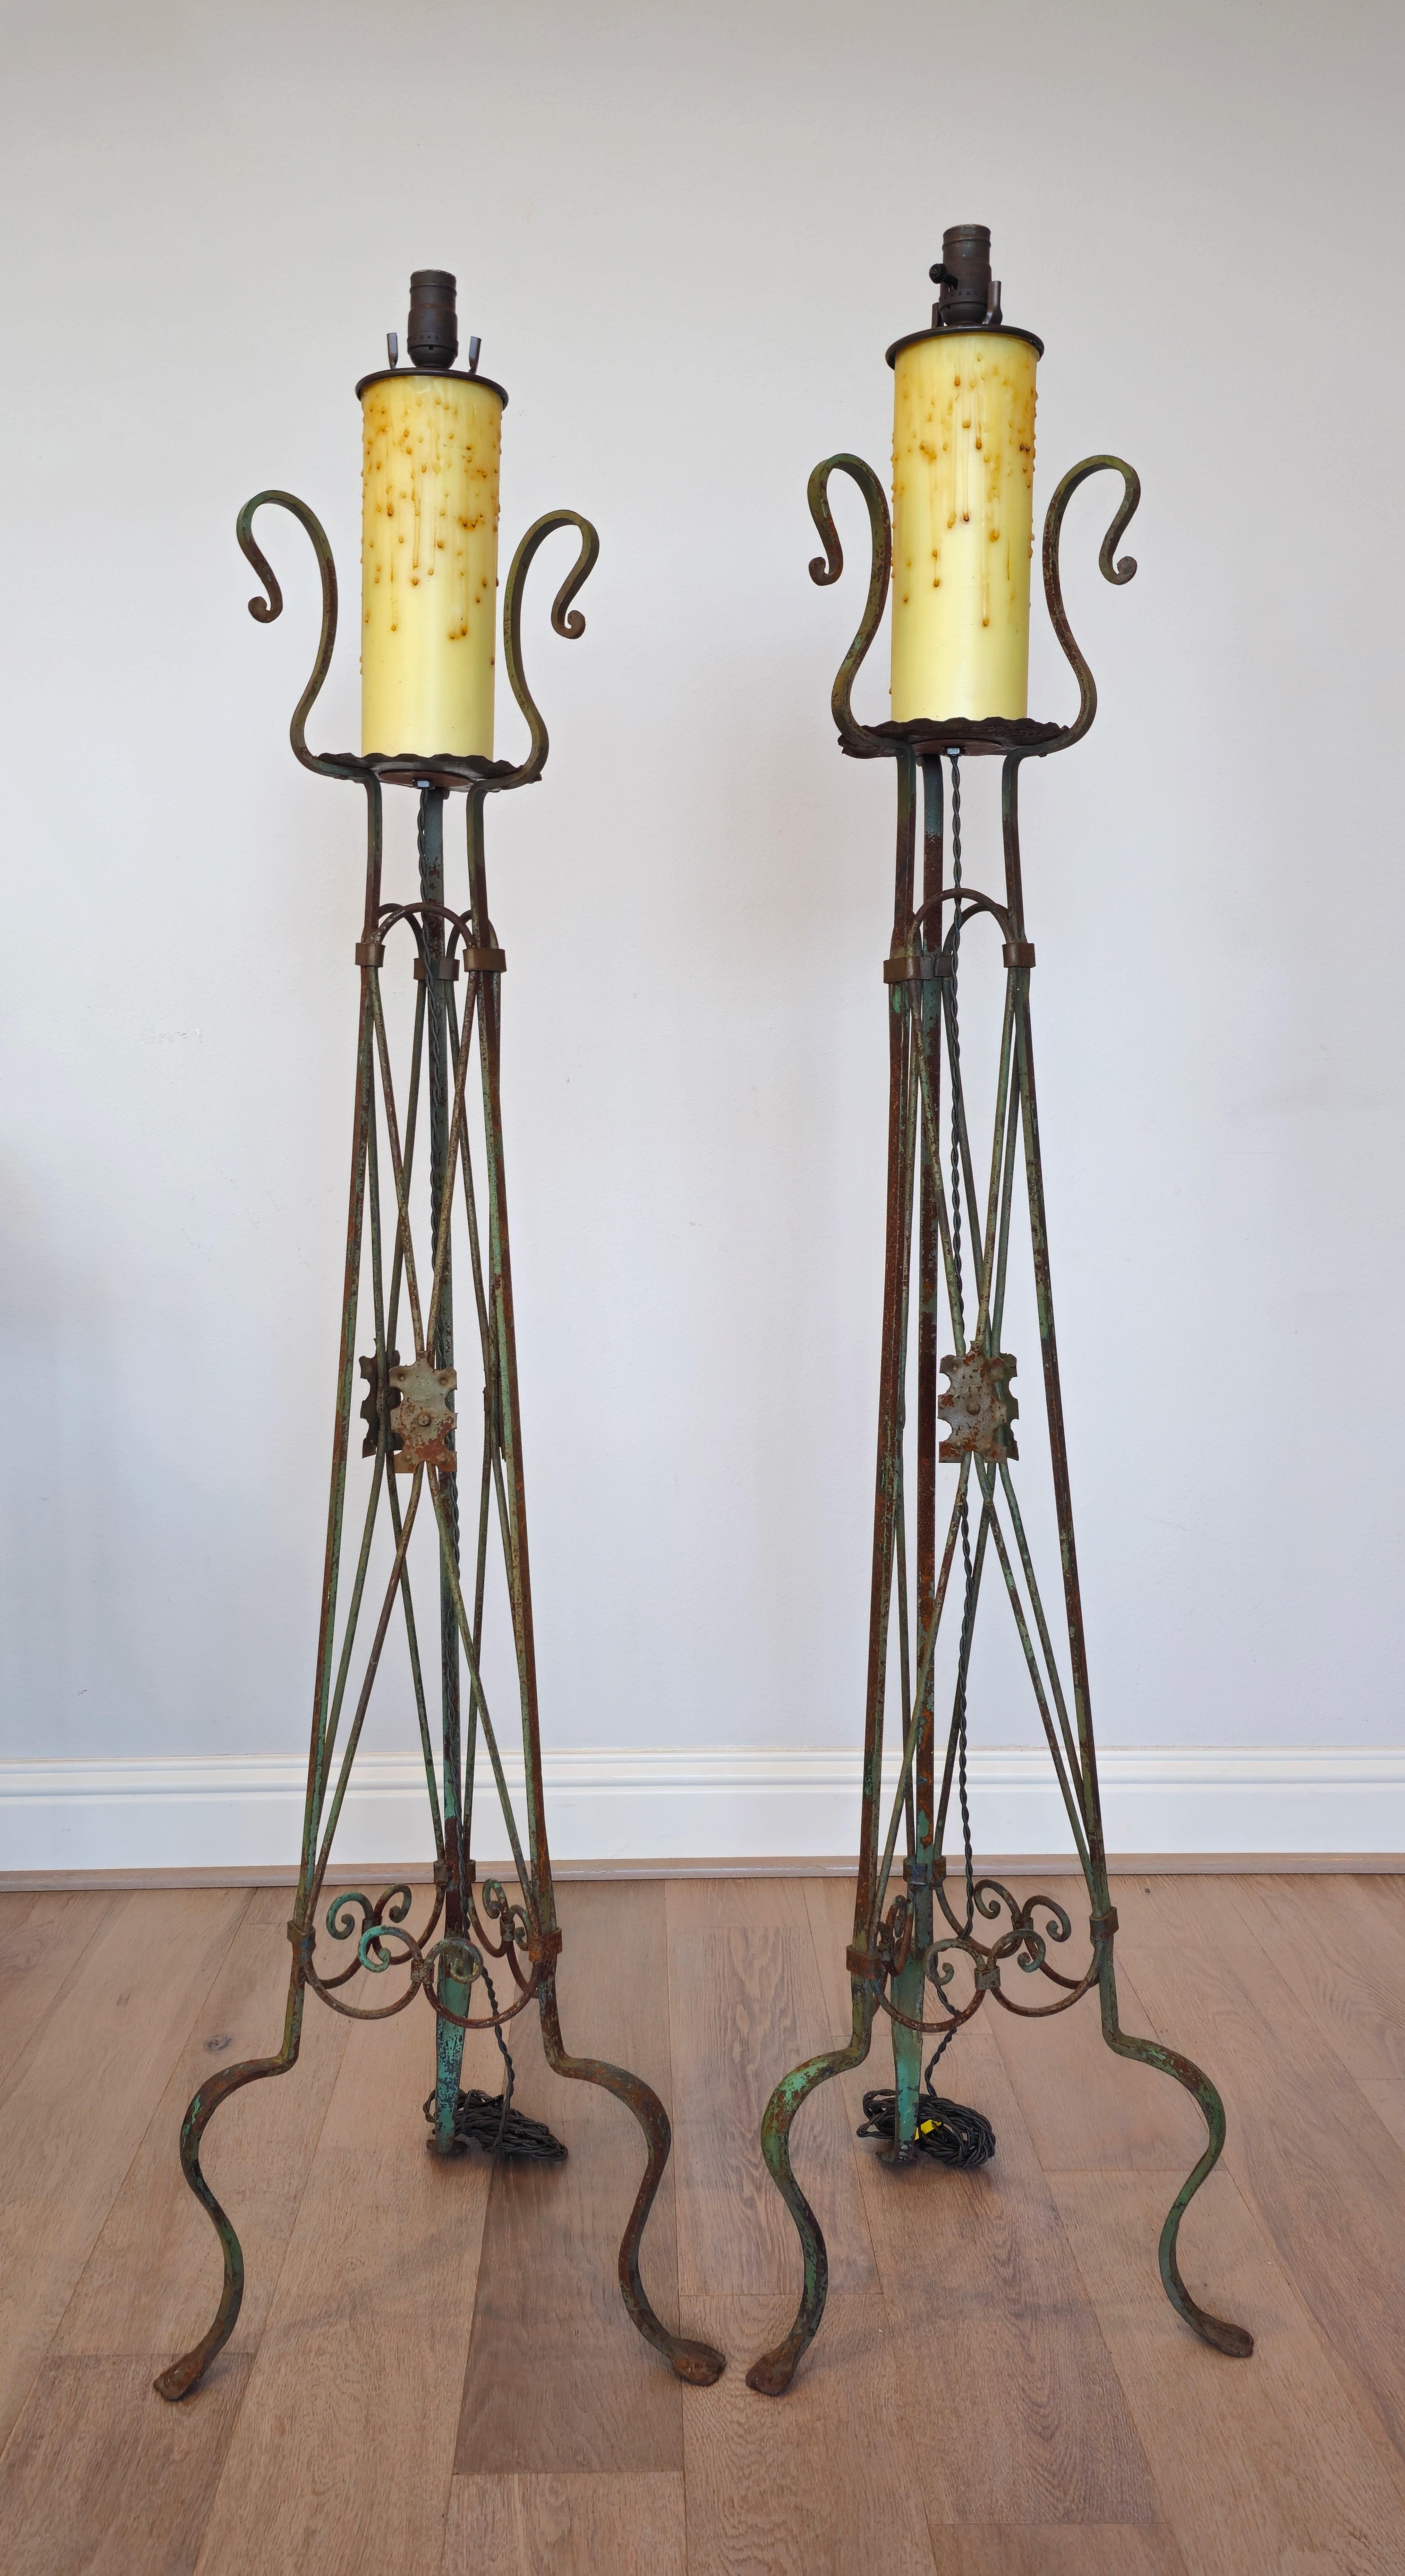 Magnifique paire de faux chandeliers torchères - lampes sur pied - en fer à volutes de style néoclassique athénien.

Chacune avec une seule lumière montée sur une grande bougie surdimensionnée, s'élevant sur un pied triangulaire en fer peint en vert